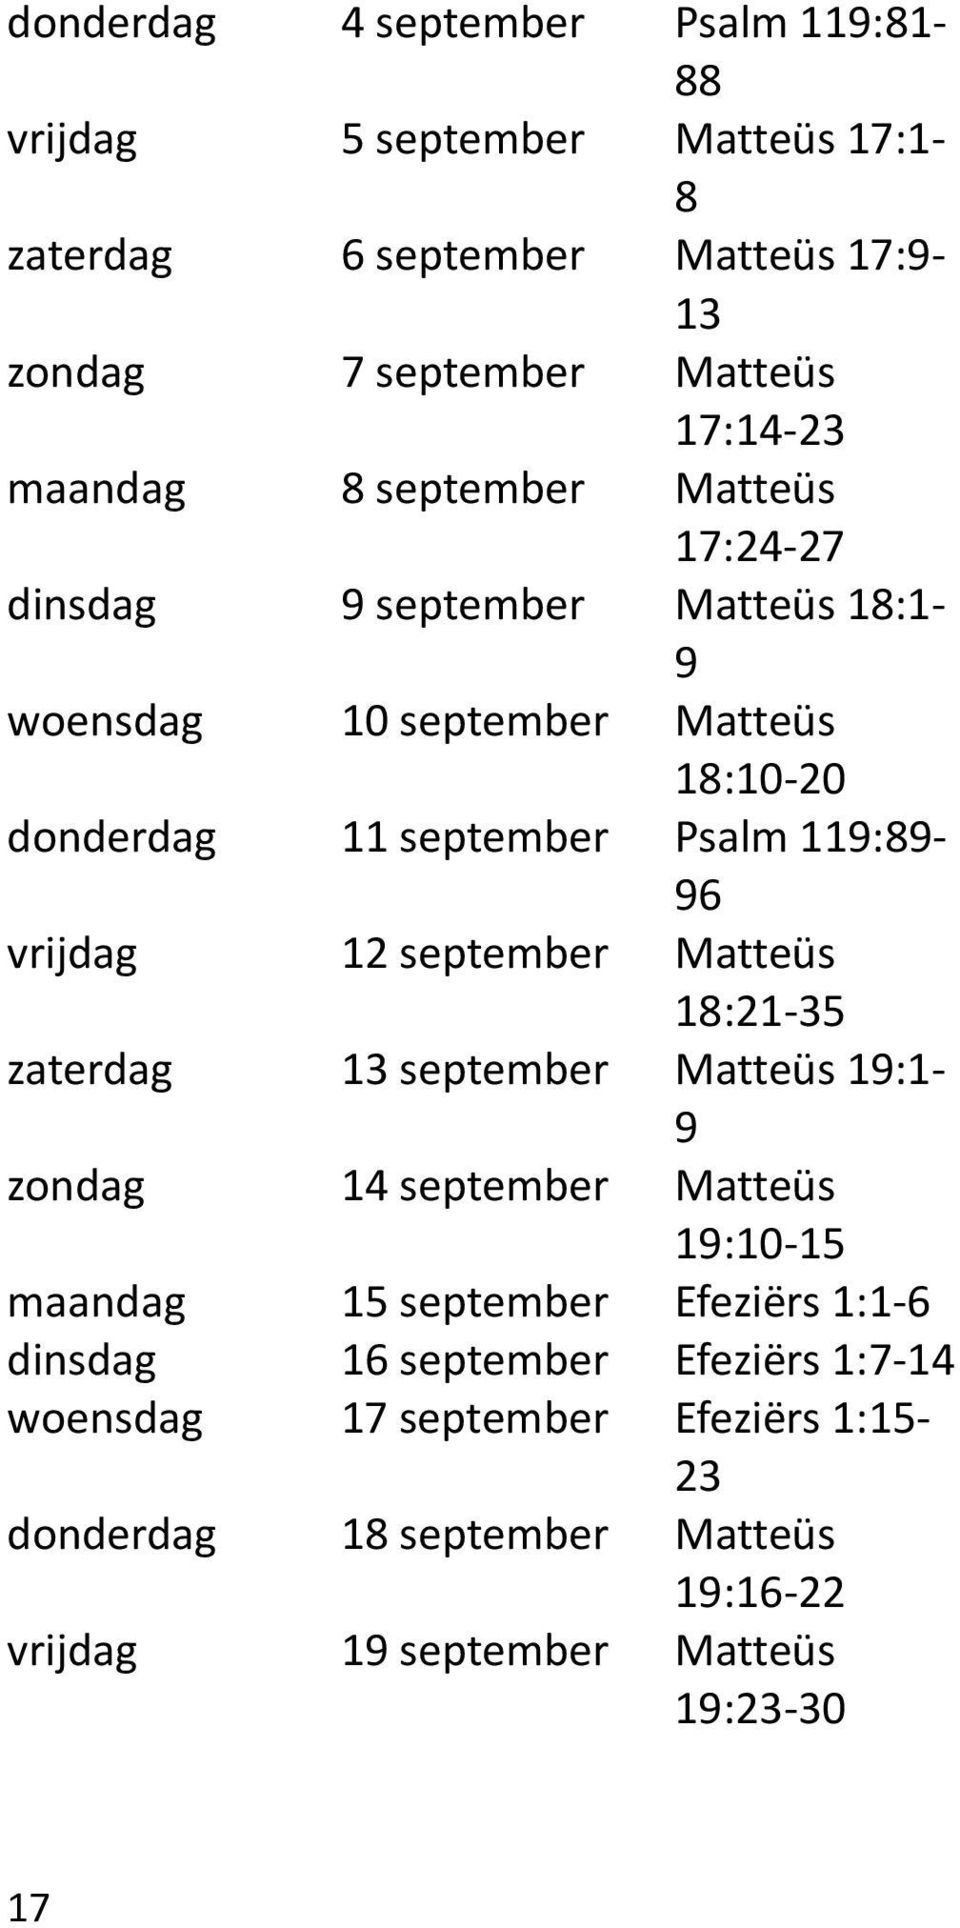 vrijdag 12 september Matteüs 18:21-35 zaterdag 13 september Matteüs 19:1-9 zondag 14 september Matteüs 19:10-15 maandag 15 september Efeziërs 1:1-6